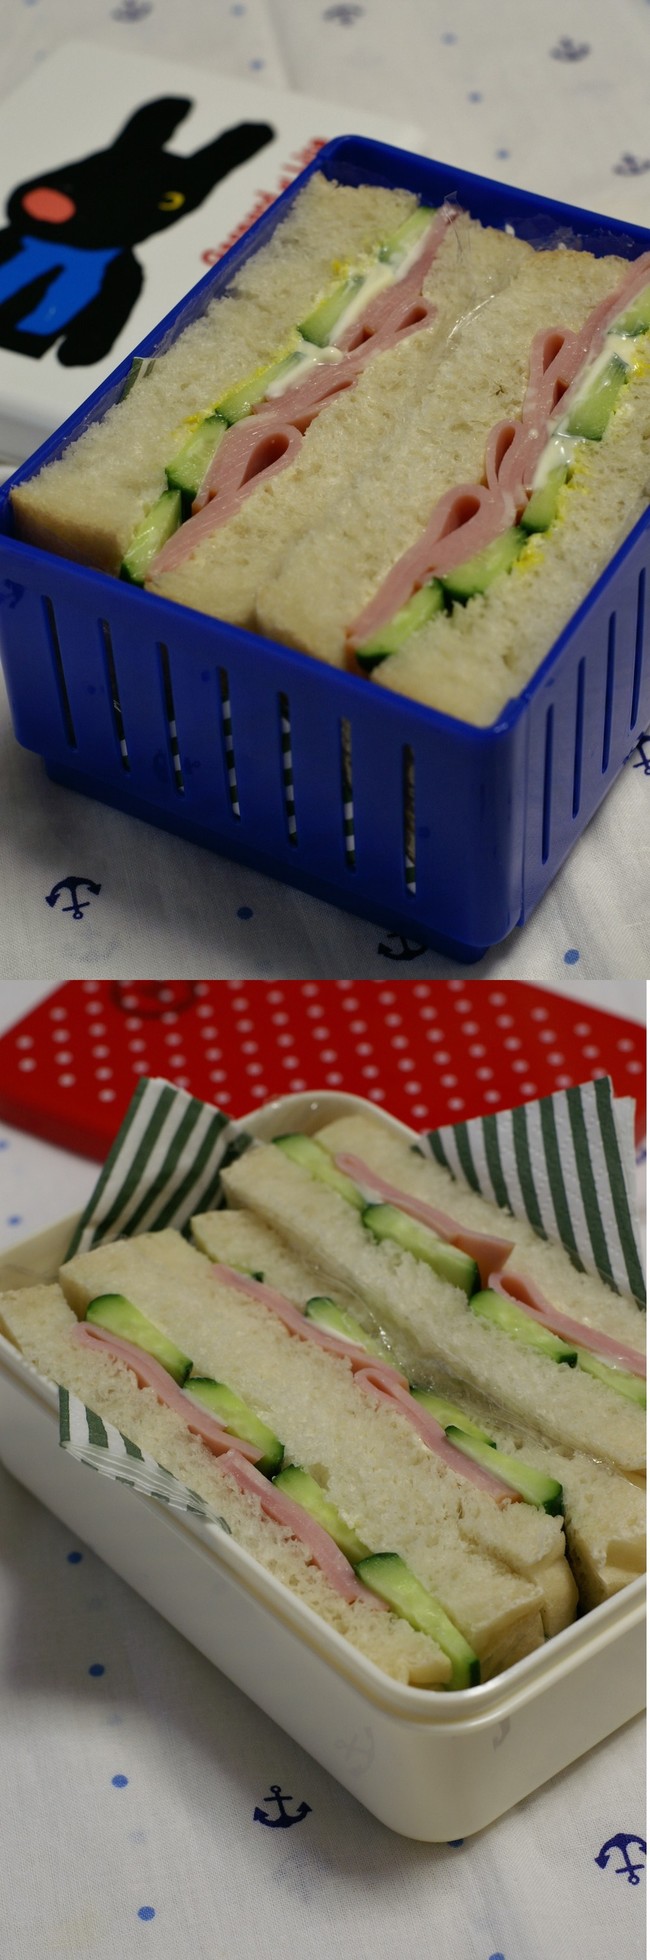 ハムときゅうりのサンドイッチ弁当 ピンクのたまごのお弁当日記 クックパッドブログ